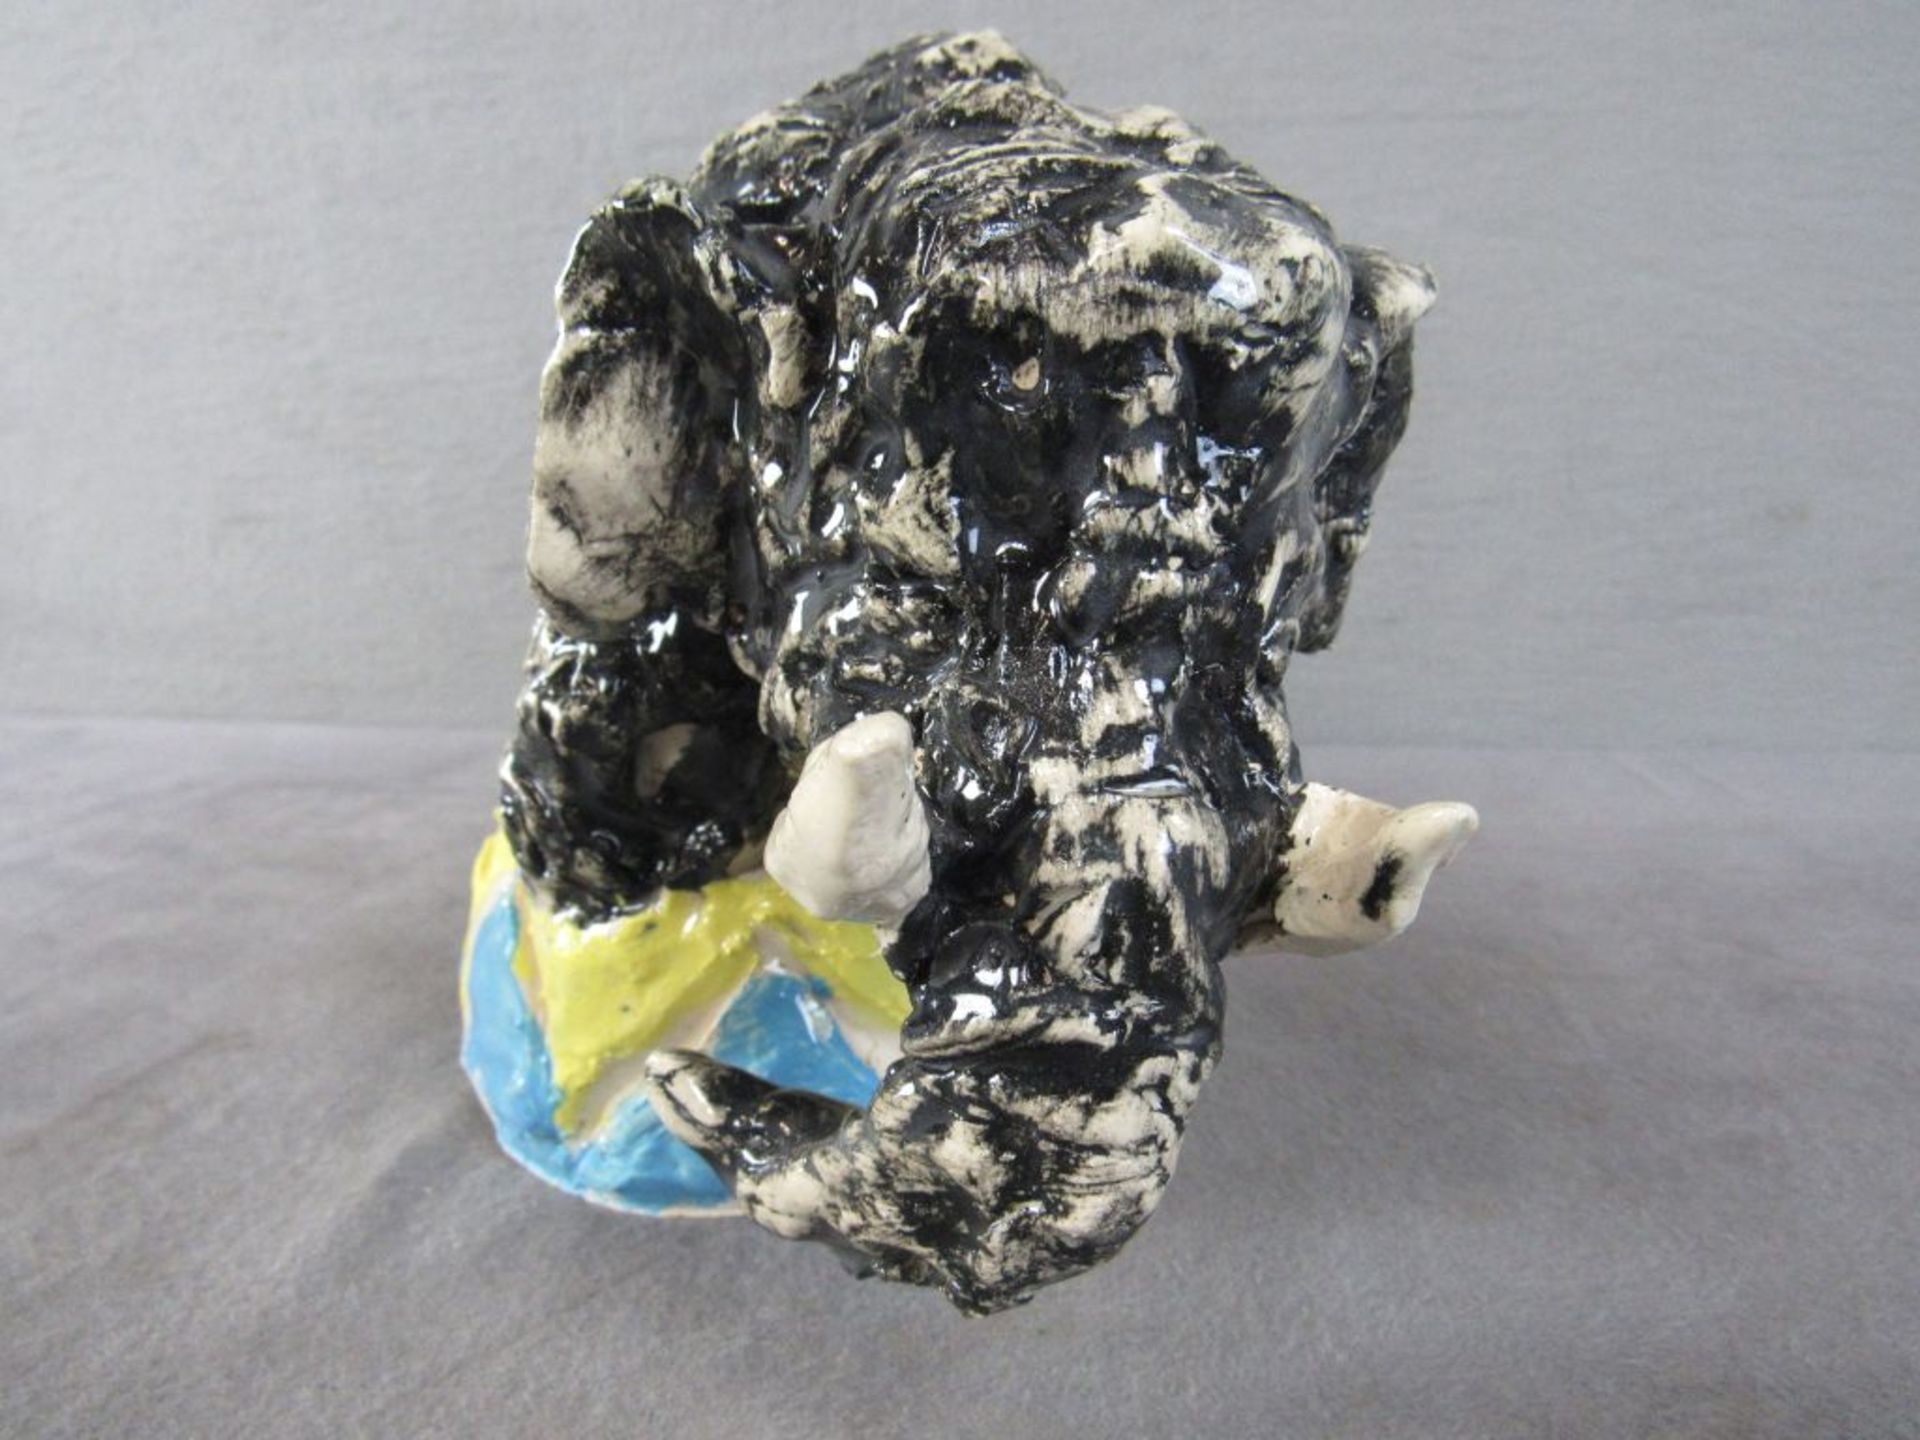 Vintage Keramikfigur farbig lasiert unterseits gemarkt Elefant 19cm hoch - Image 2 of 4